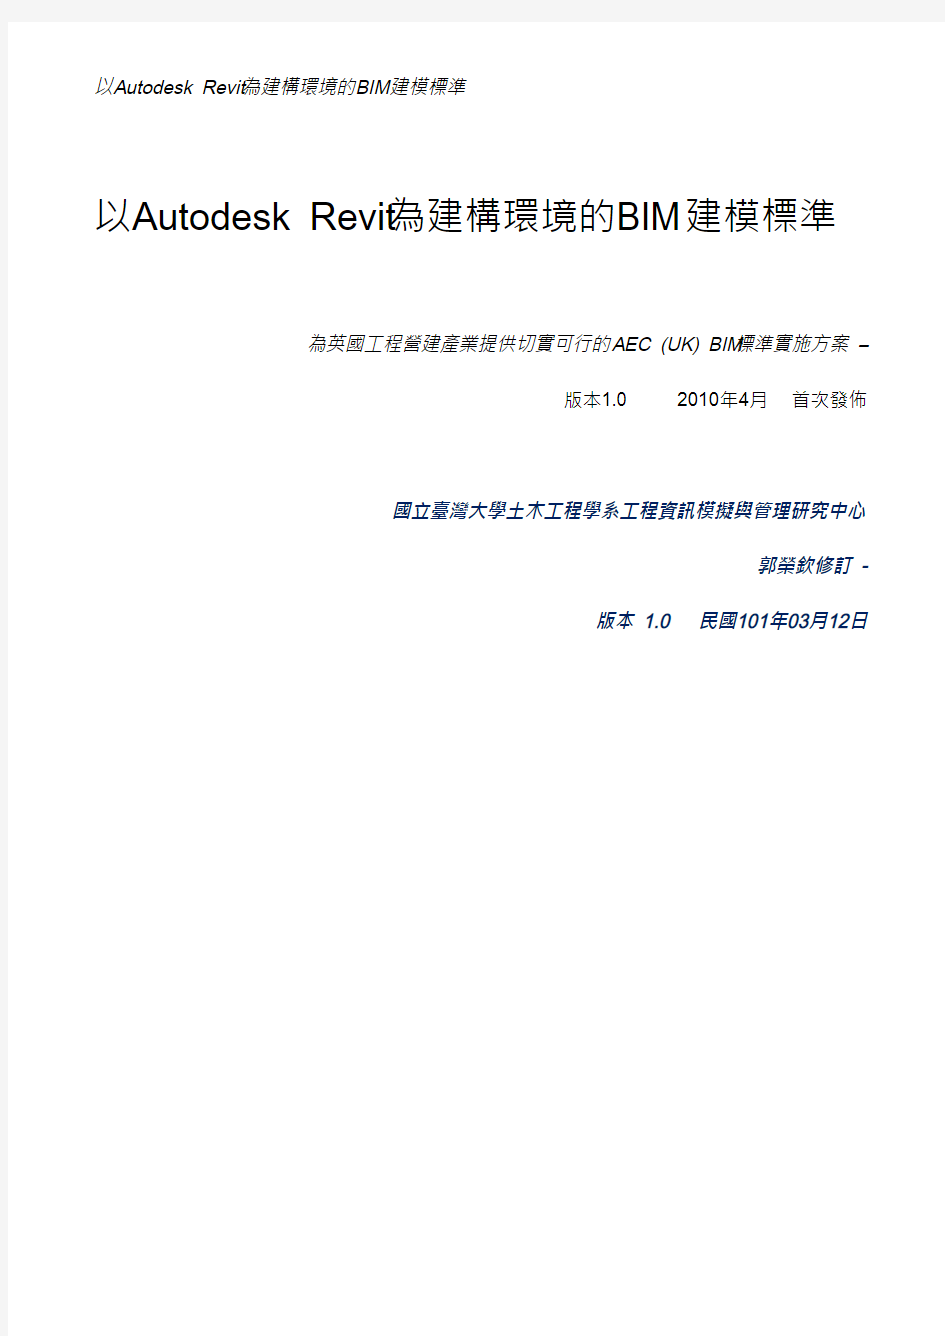 以Autodesk_Revit为建筑环境的AEC(UK0BIM标准1。0版